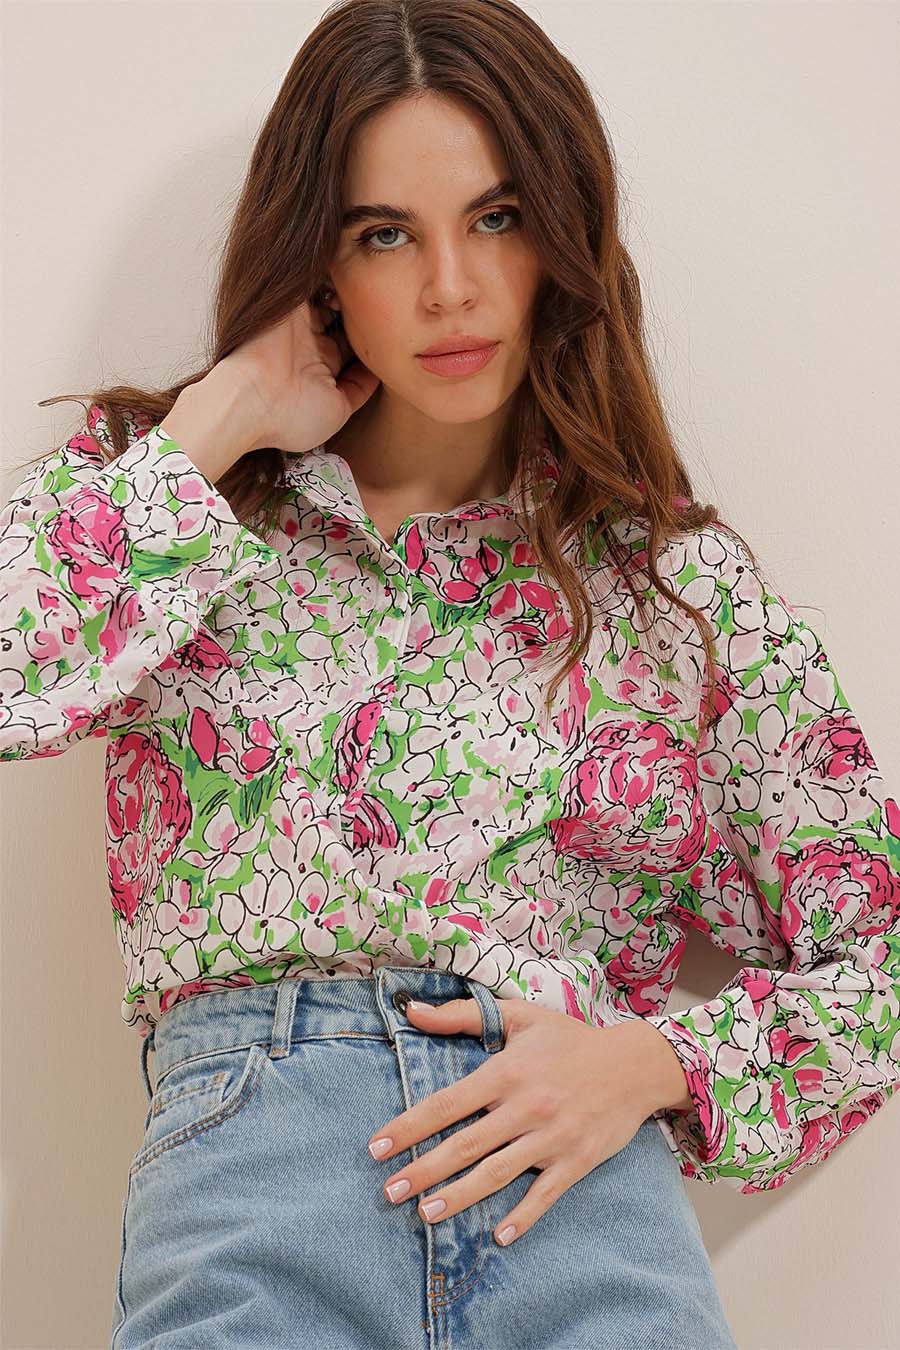 Γυναικείο πουκάμισο Lowanna, Πράσινο/Ροζ 3